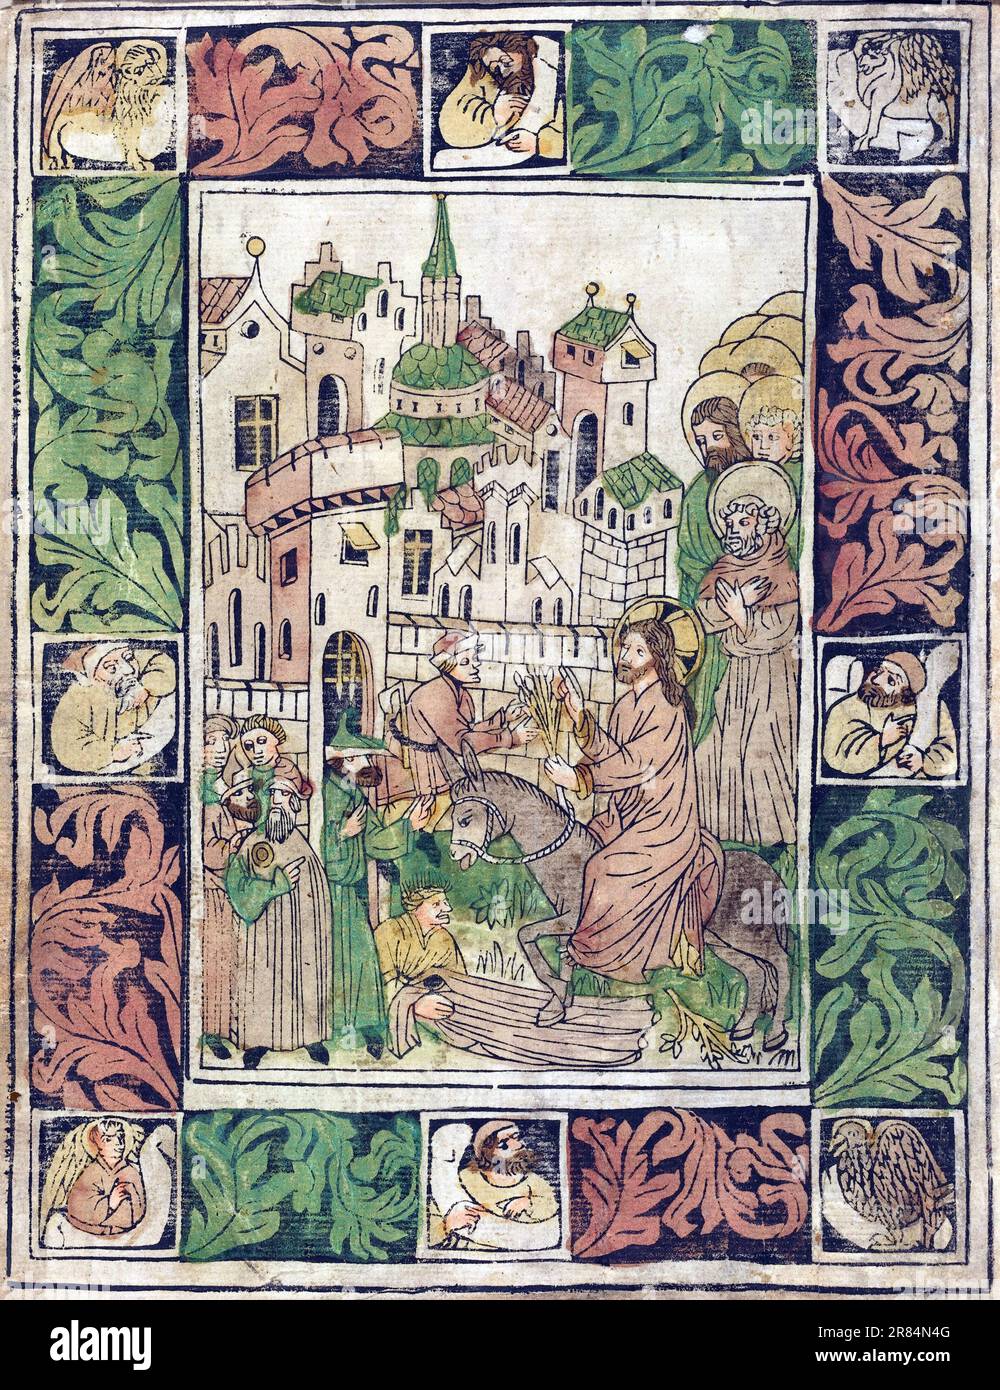 Deutsche aus dem 15. Jahrhundert, Holzschnitt, handgefärbt in Rosa, Gelb, Braun, Grün und grau Christi Eintritt in Jerusalem, c. 1450 Stockfoto